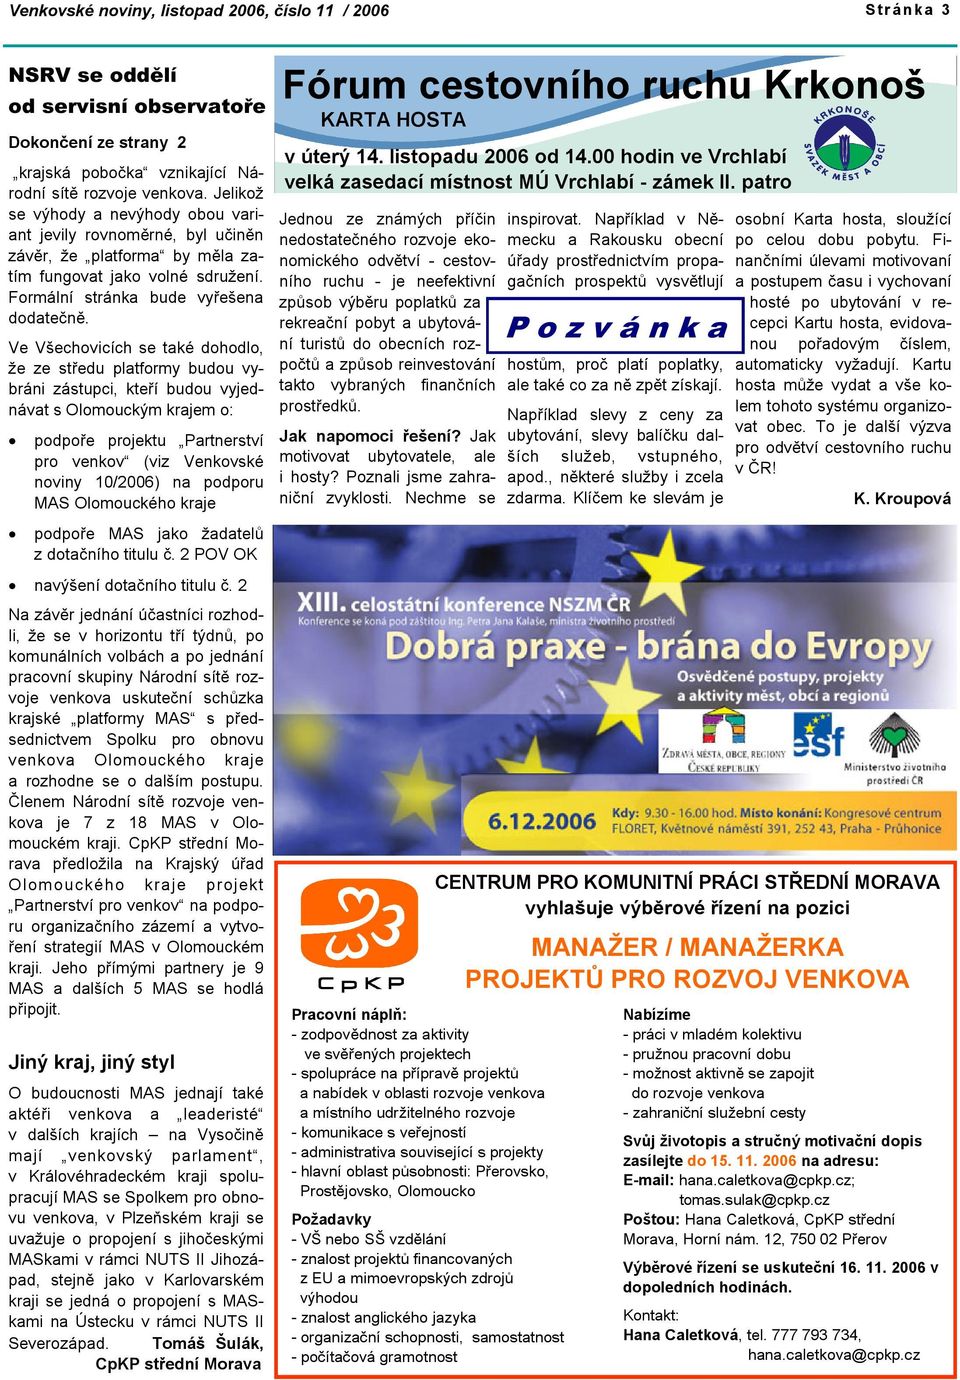 Ve Všechovicích se také dohodlo, že ze středu platformy budou vybráni zástupci, kteří budou vyjednávat s Olomouckým krajem o: podpoře projektu Partnerství pro venkov (viz Venkovské noviny 10/2006) na